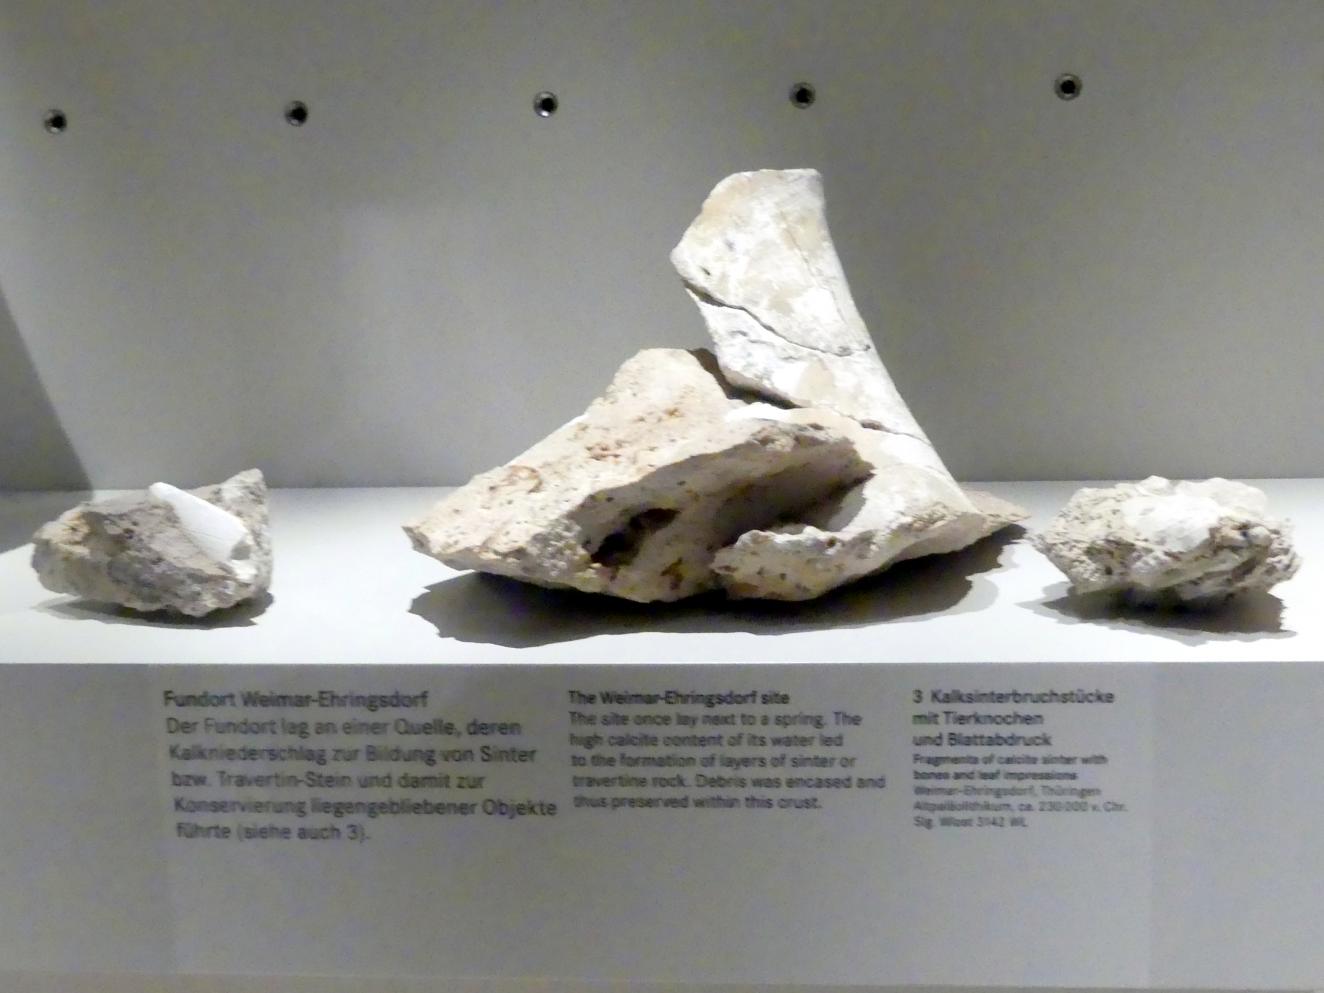 Kalksinterbruchstücke mit Tierknochen und Blattabdruck, Altpaläolithikum, 370000 - 230000 v. Chr., 230000 v. Chr.